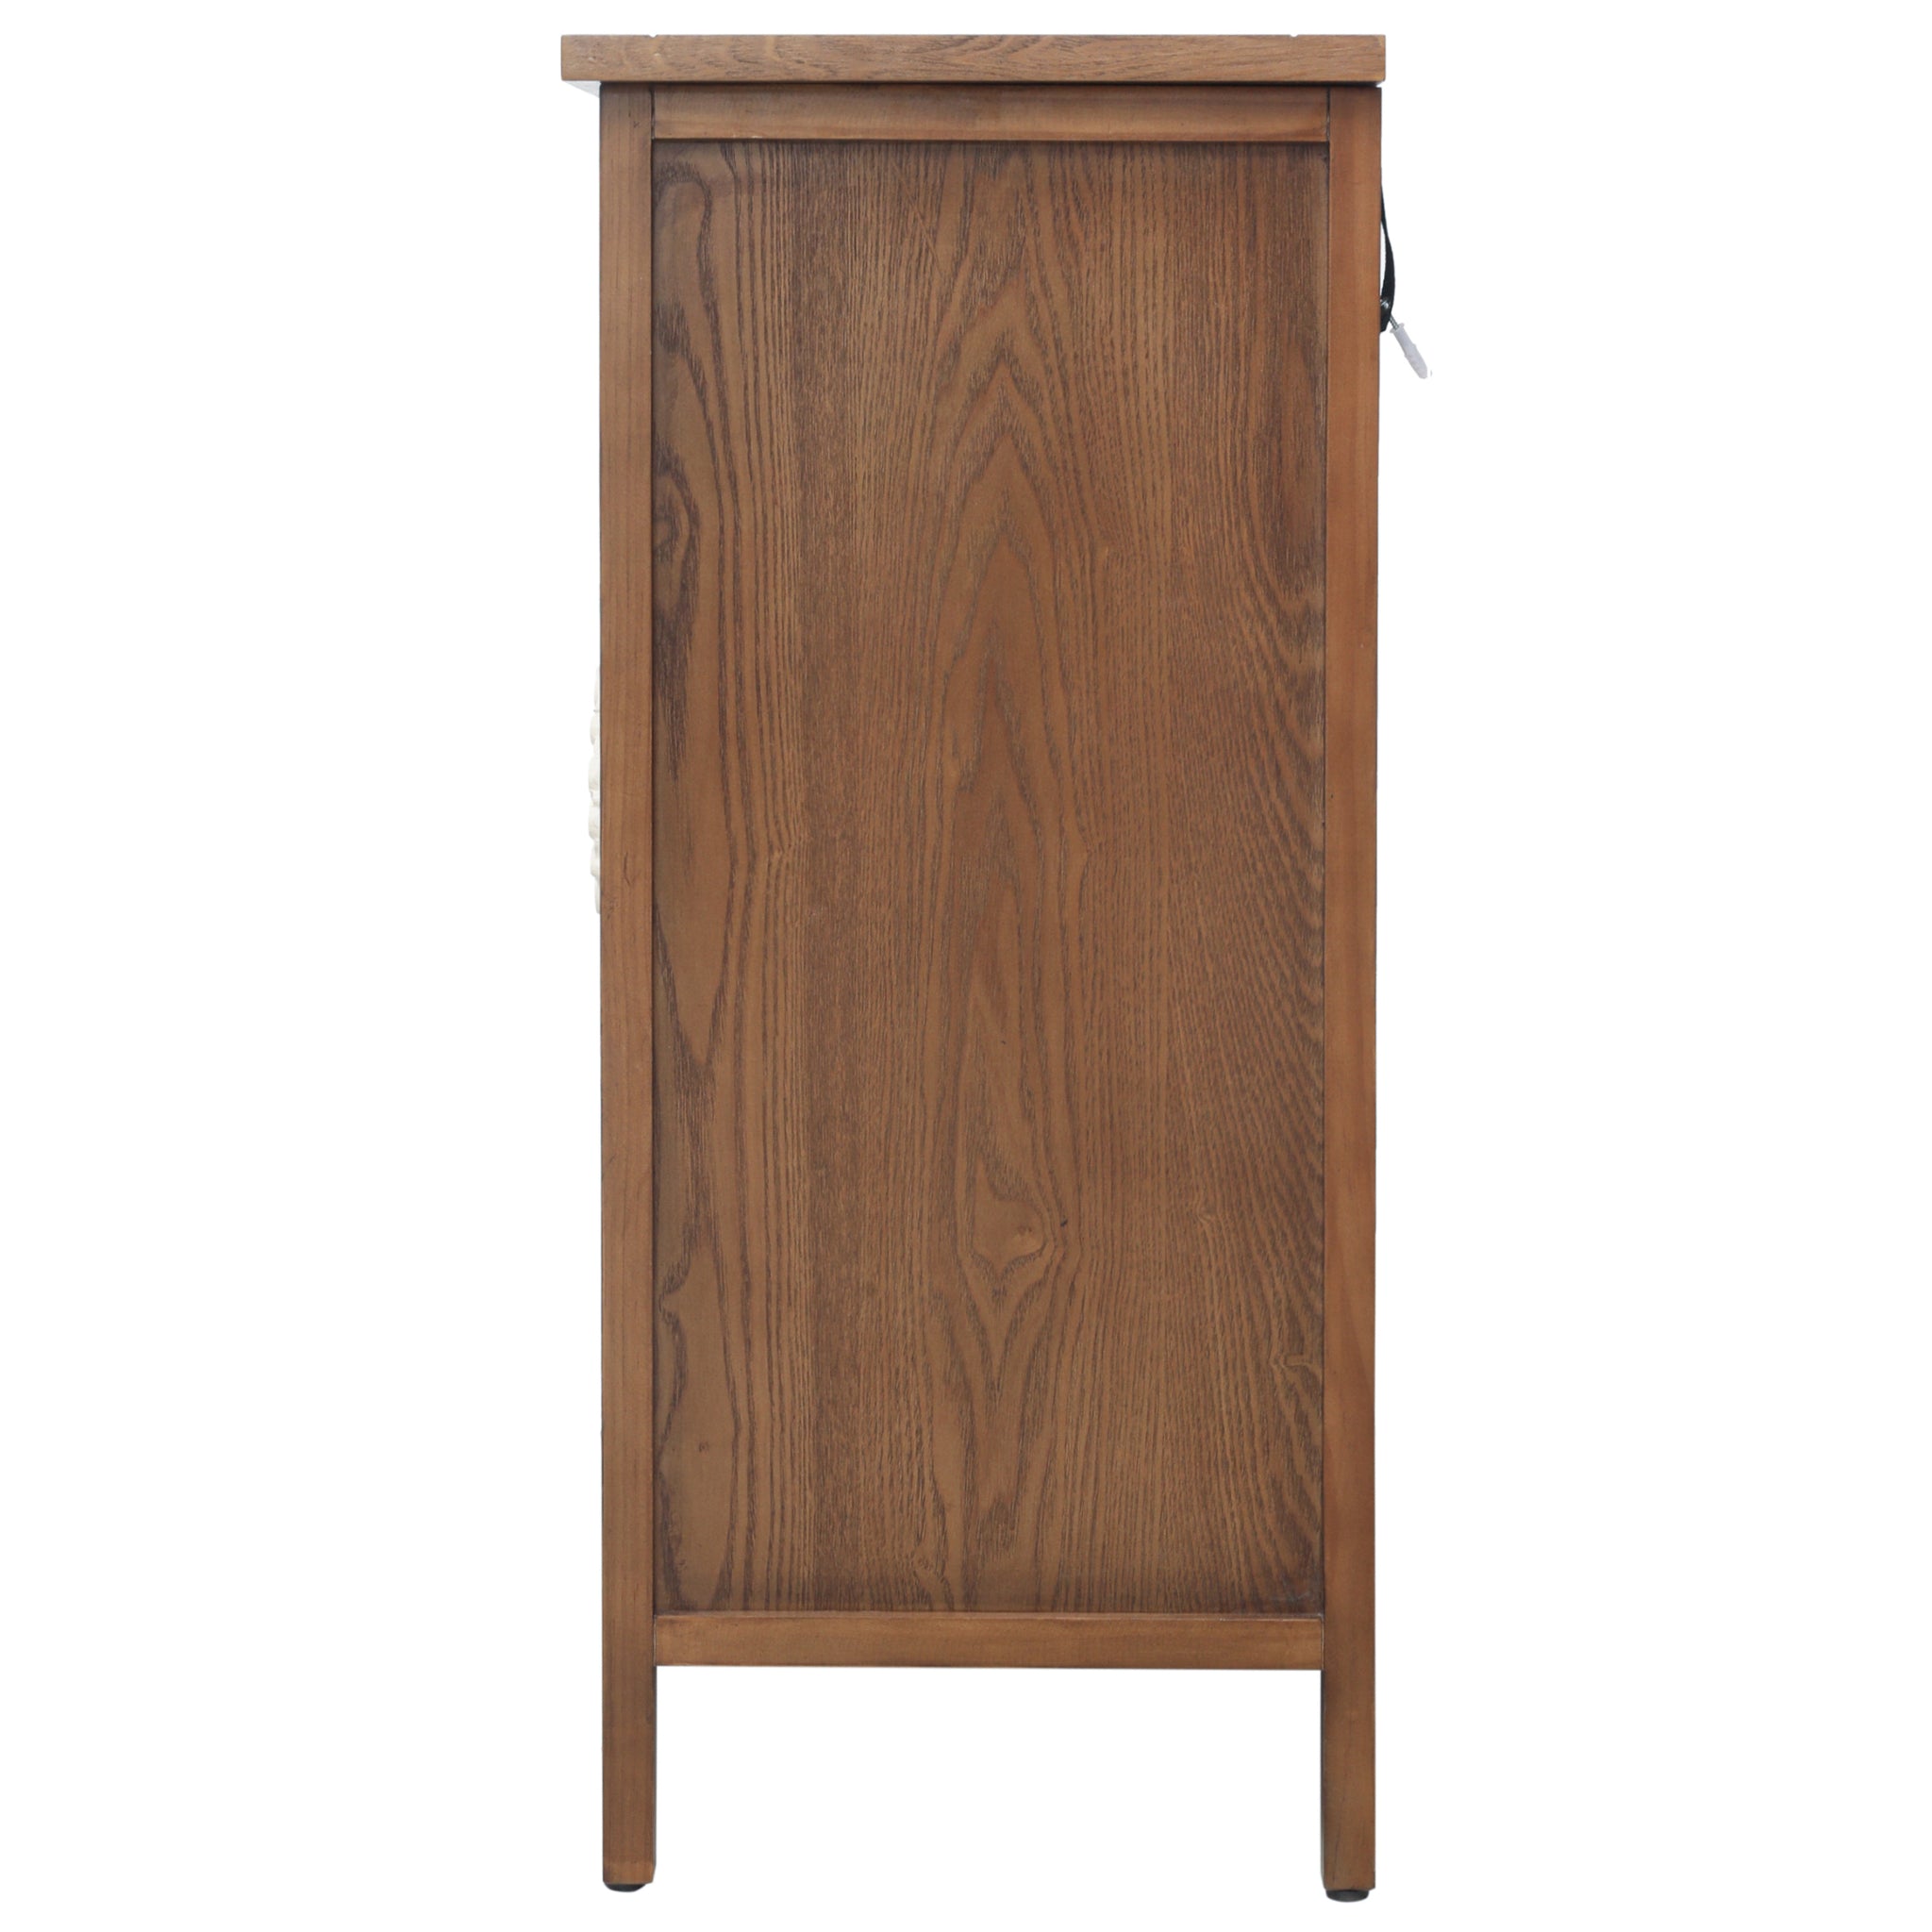 2 Door Cabinet, American Furniture, Suitable for